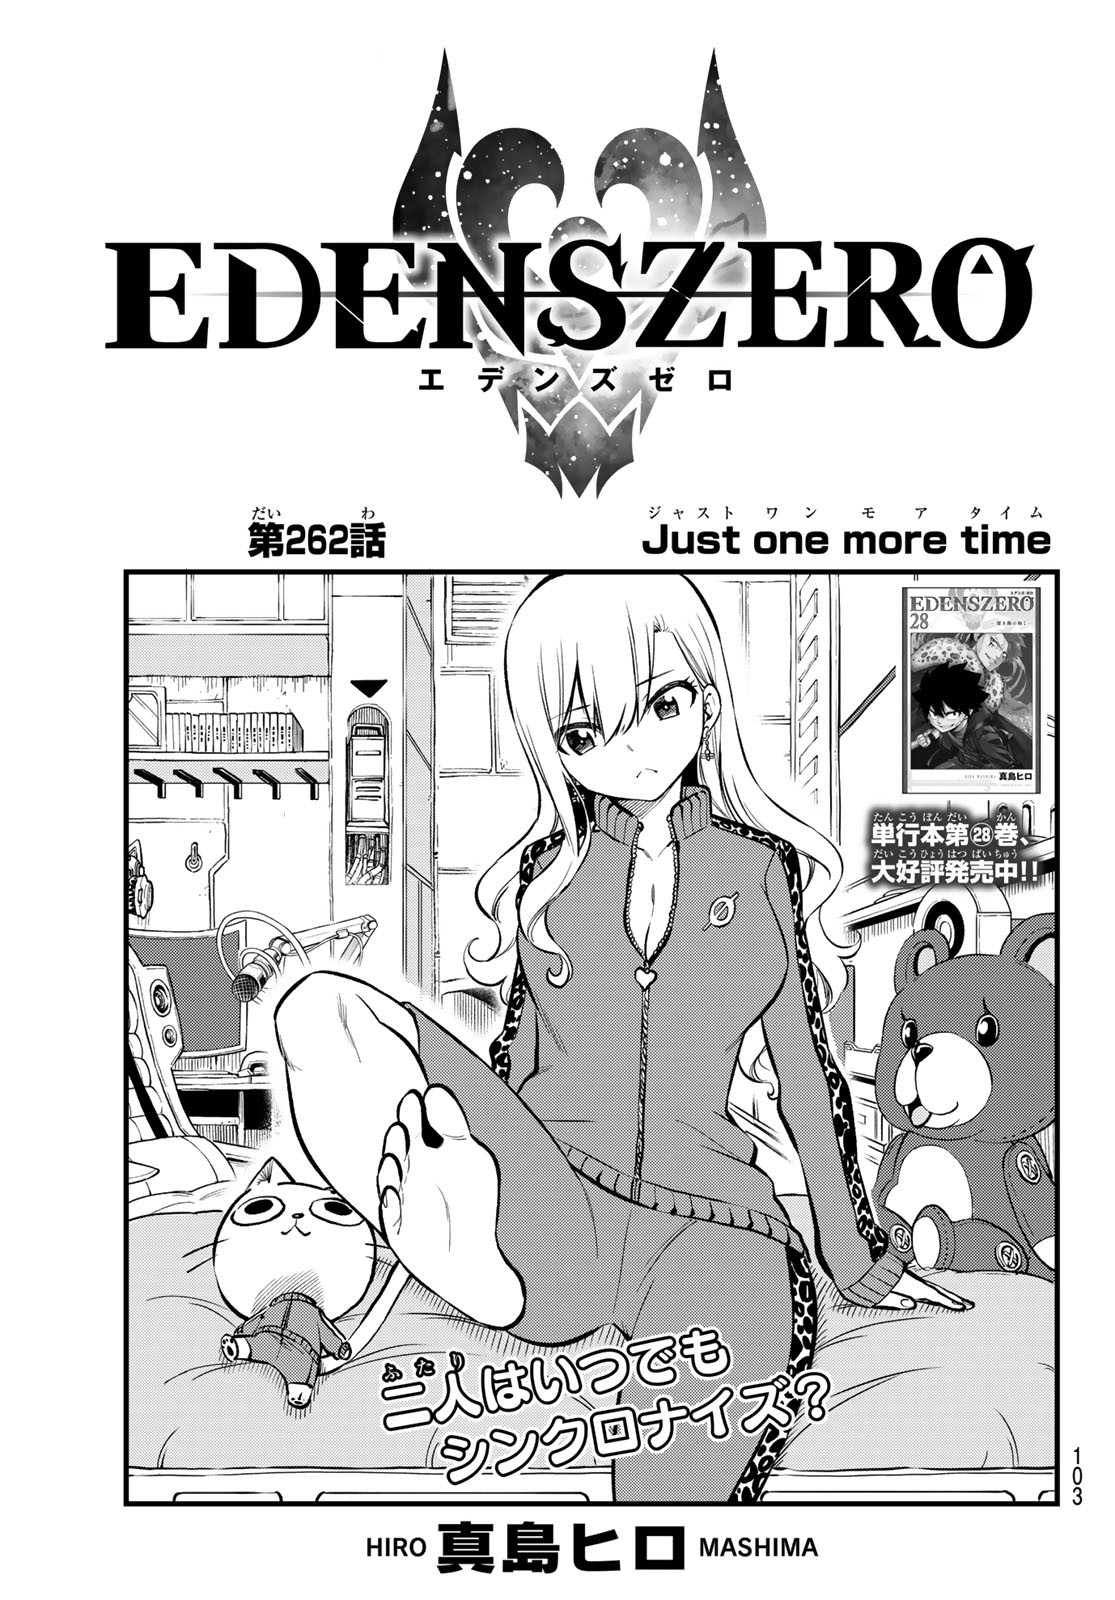 Chapter 136, Edens Zero Wiki